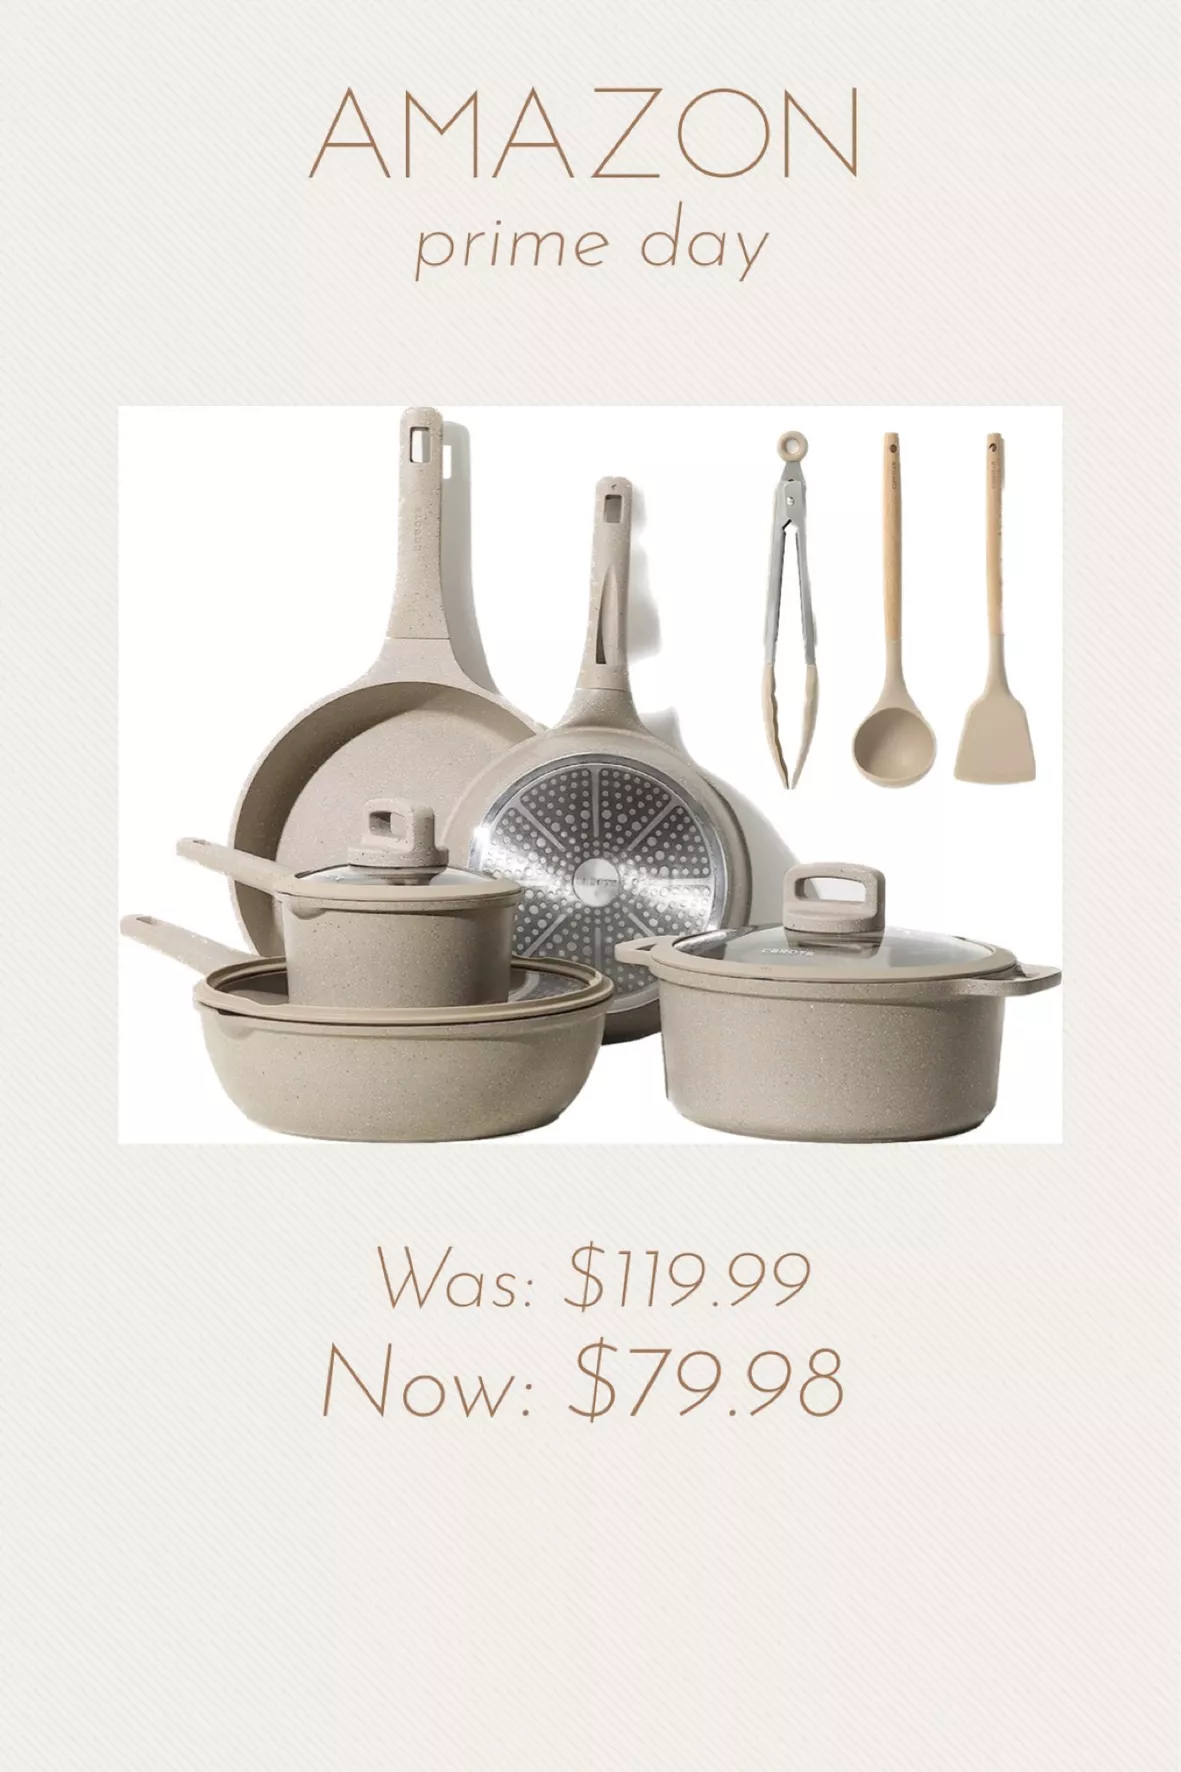  CAROTE 11pcs Pots and Pans Set, Nonstick Cookware Sets